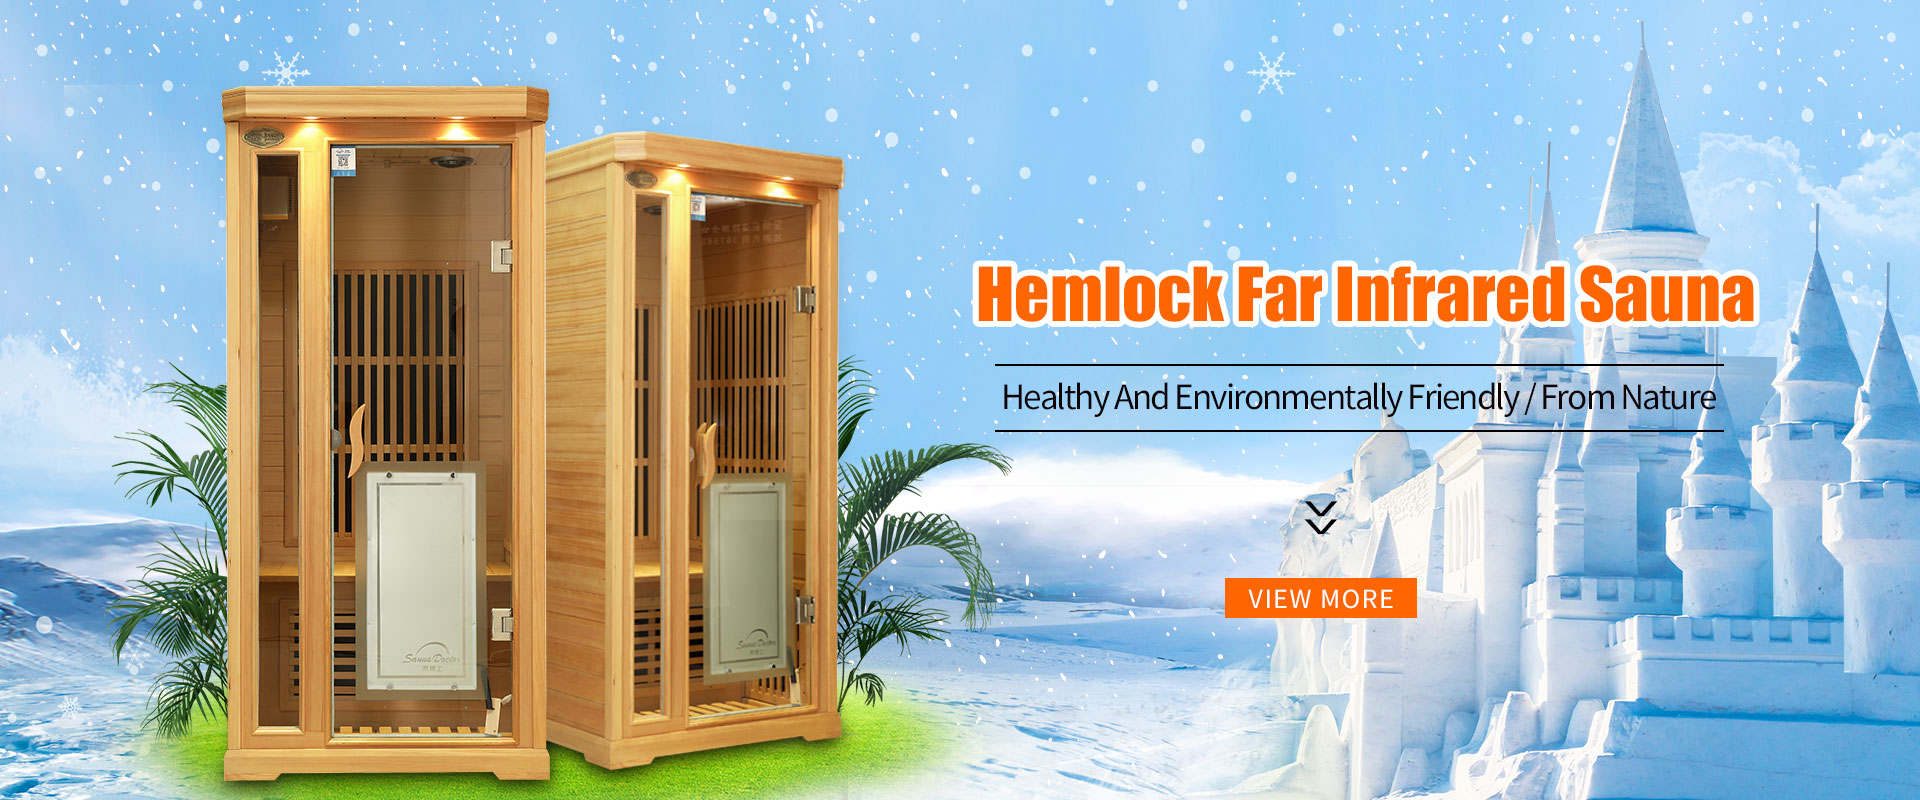 Hemlock Far Infrared Sauna